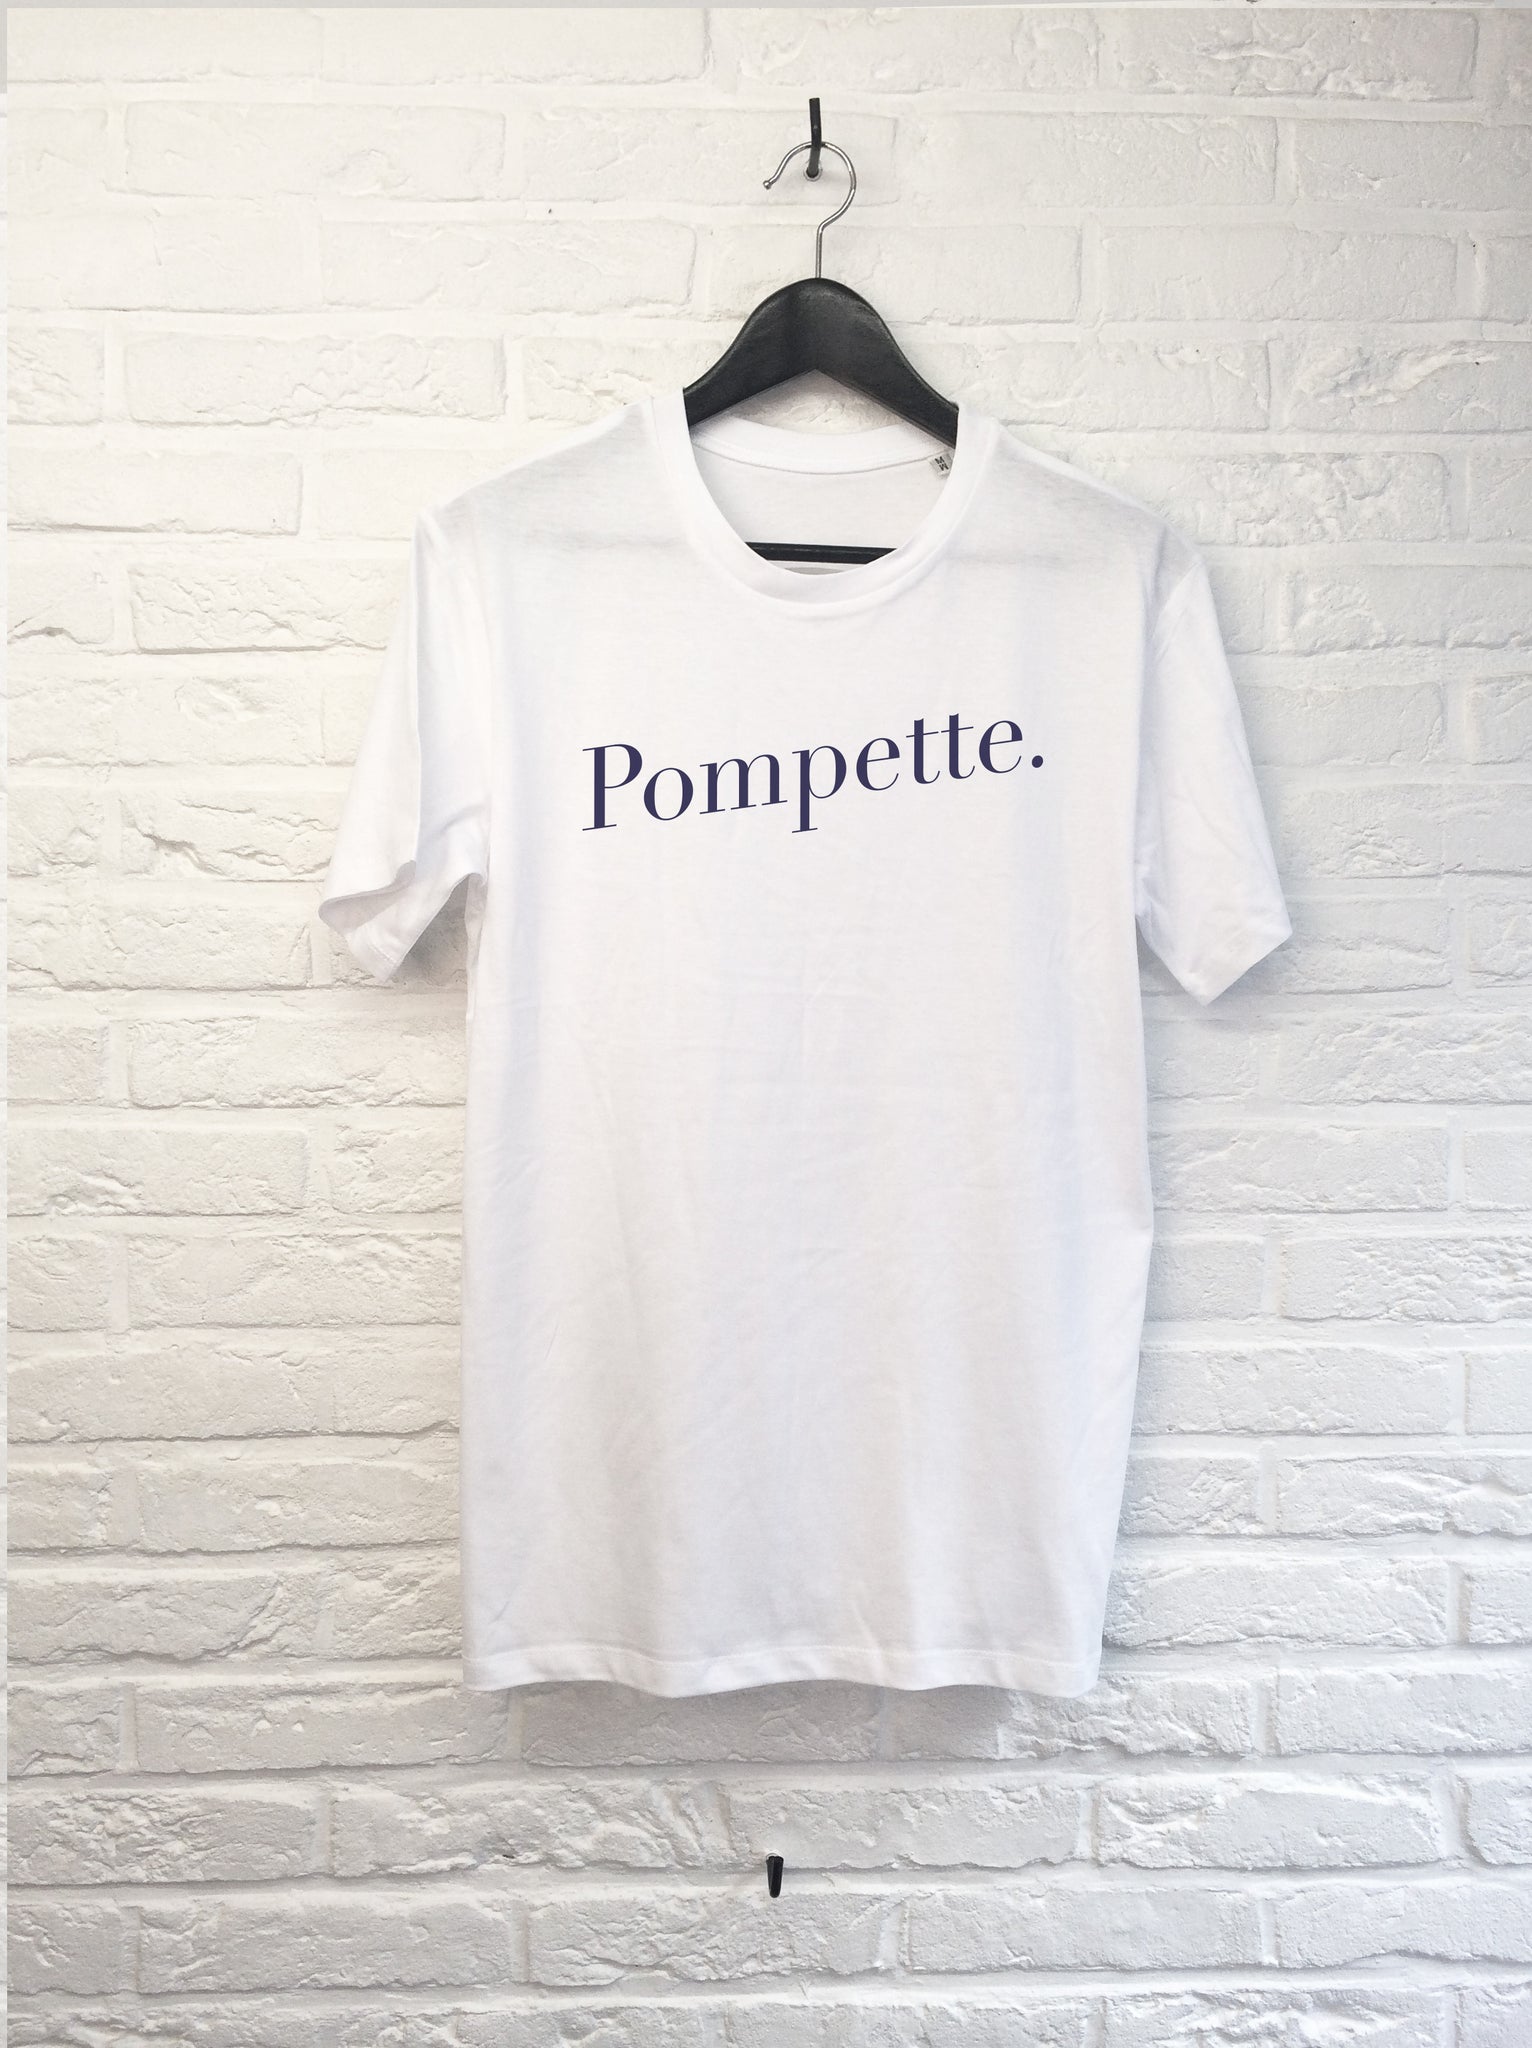 Pompette-T shirt-Atelier Amelot